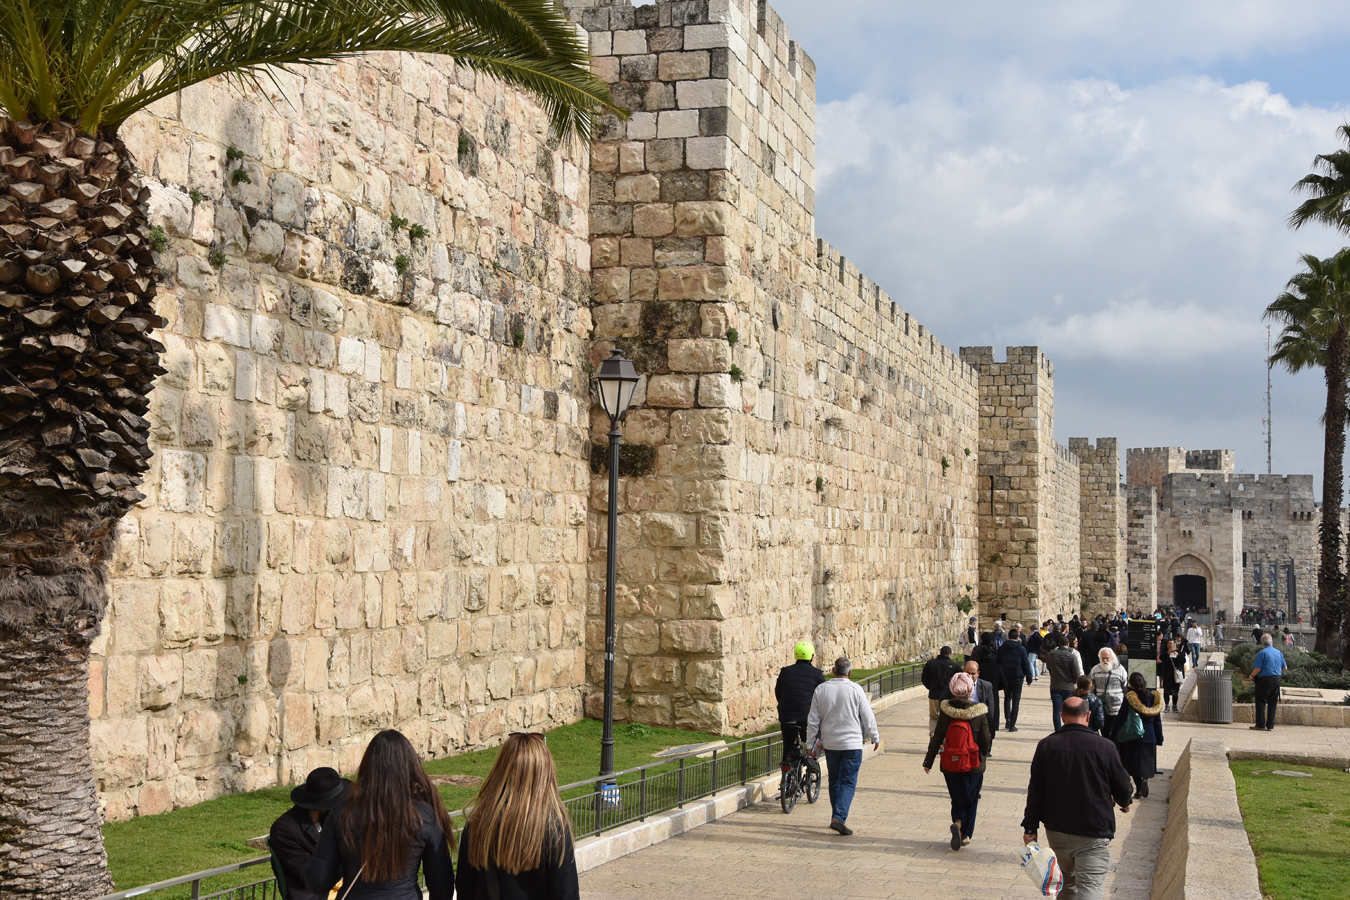 Jeruzalémské hradby - hradby Starého města s Jaffskou bránou v pozadí